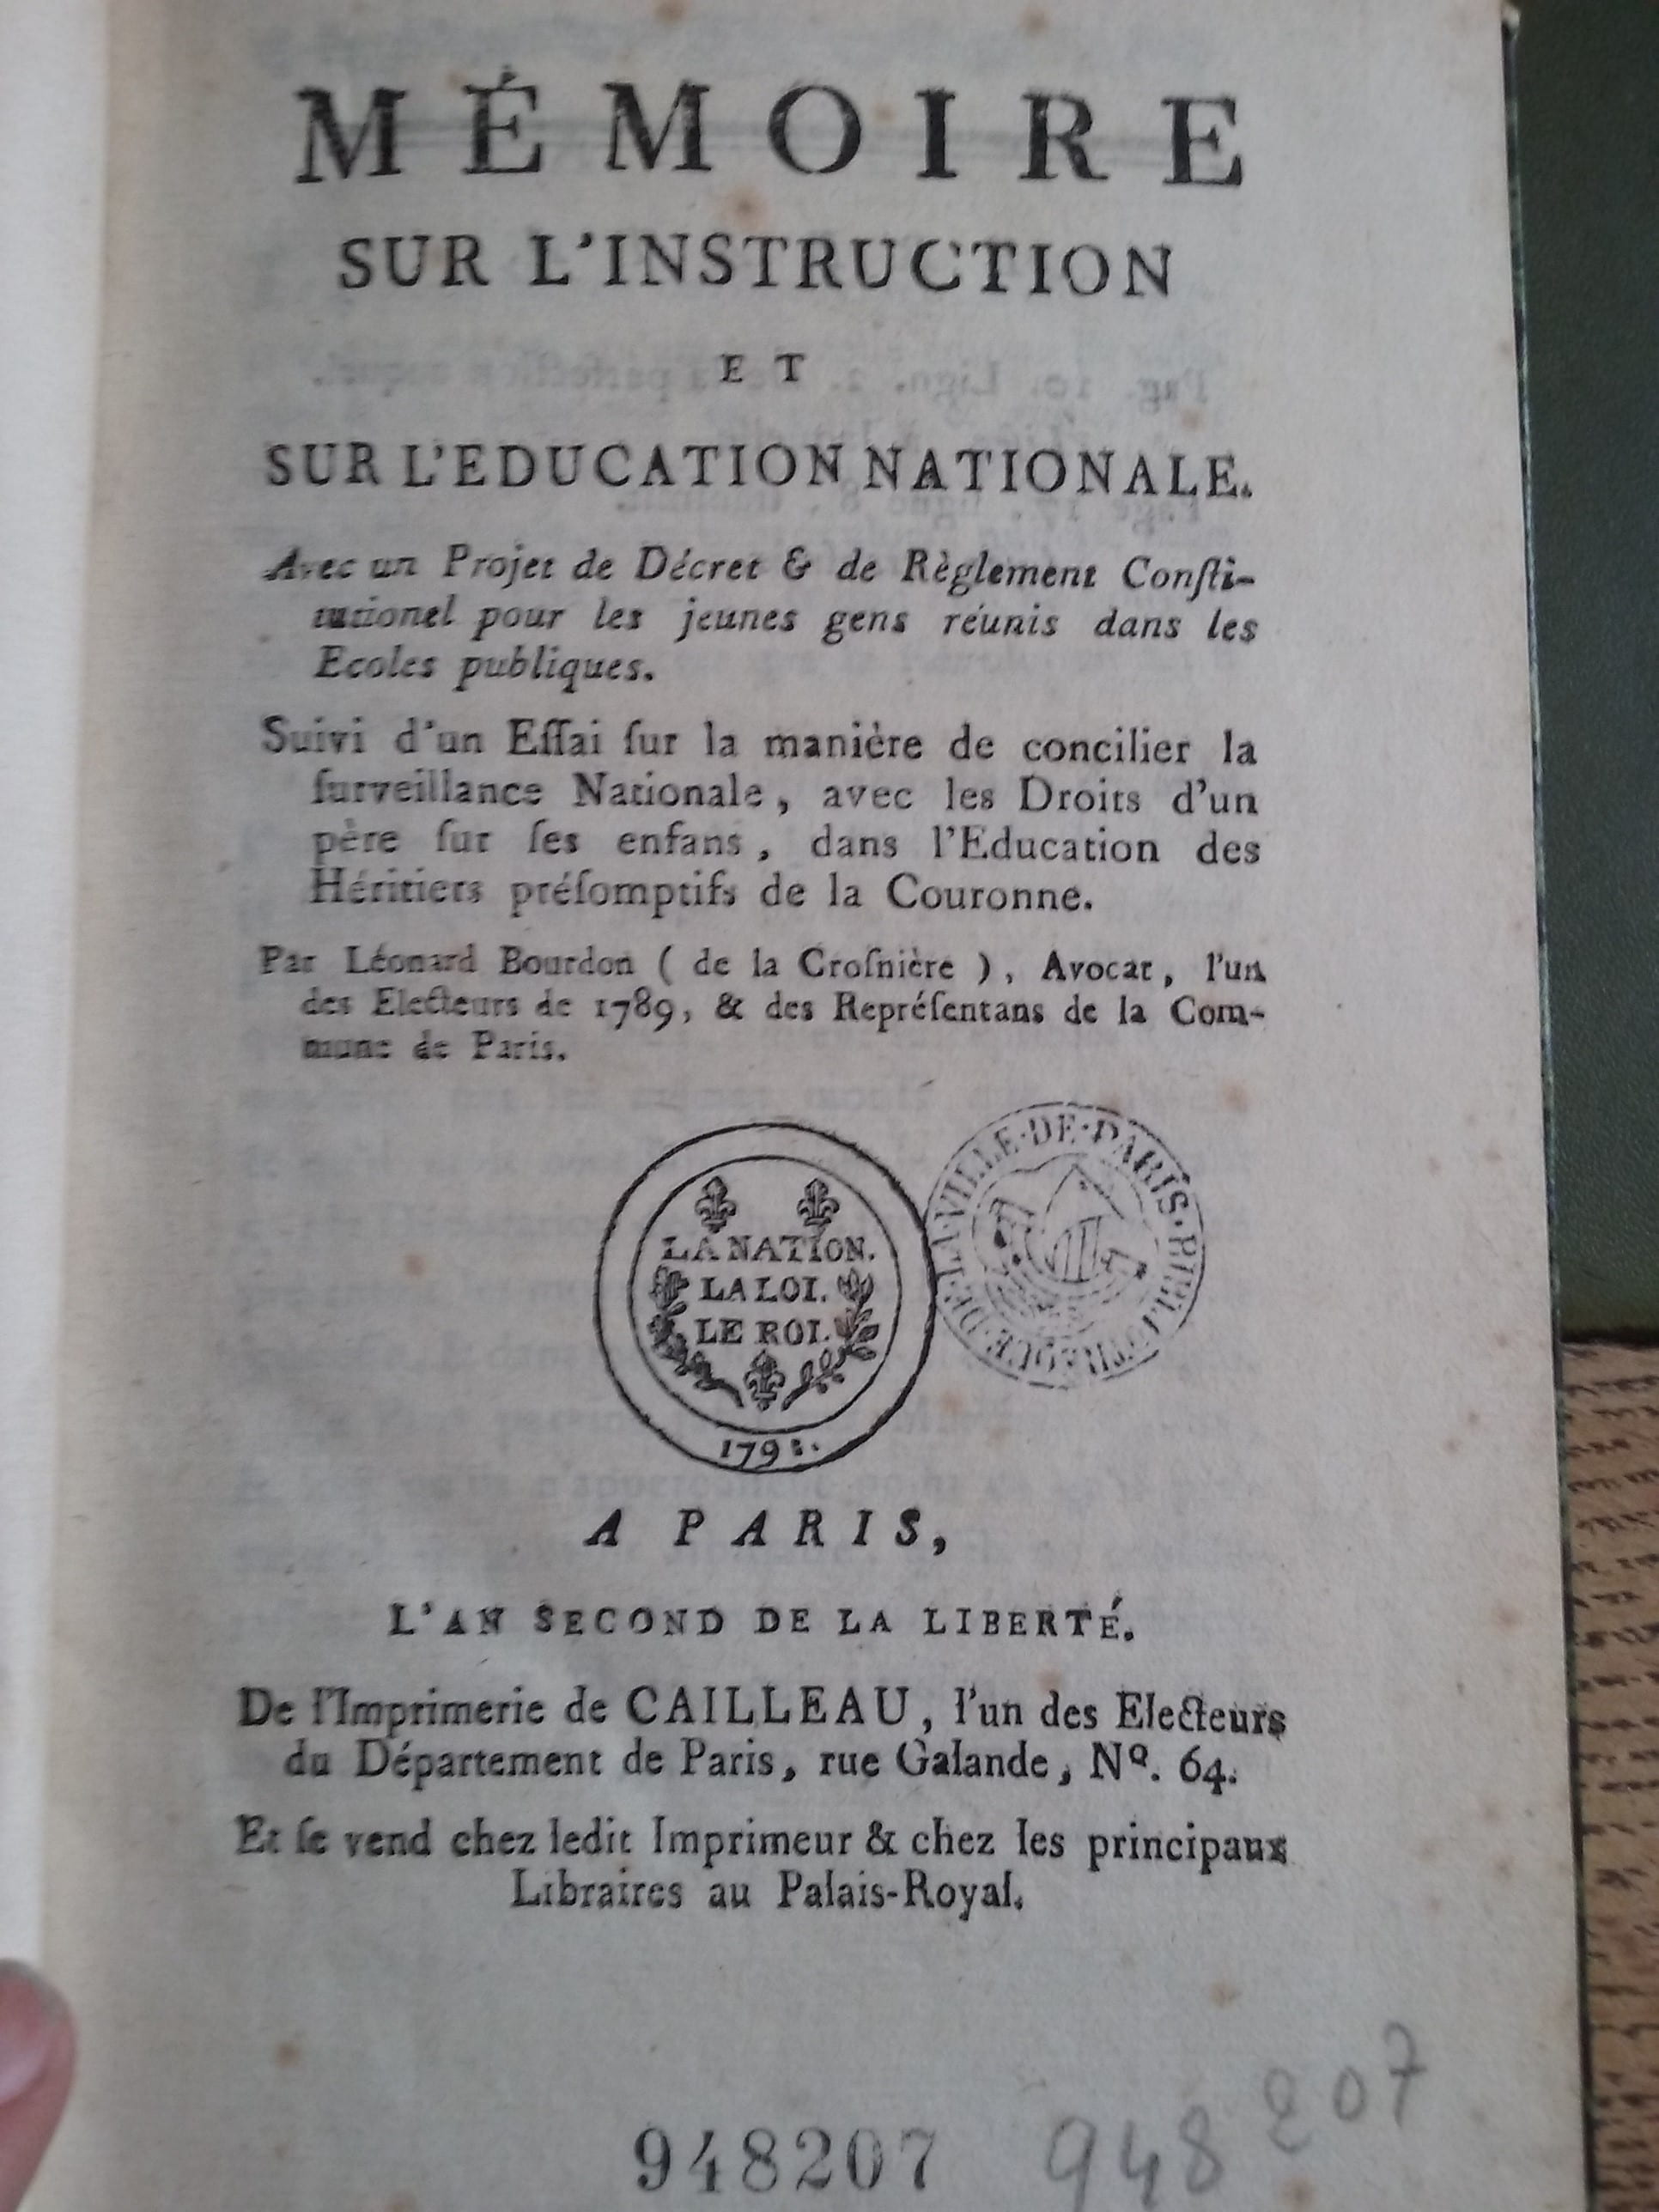 Léonard Bourdon de la Crosnière's pamphlet on public instruction. Bibliothèque Historique de la Ville de Paris.